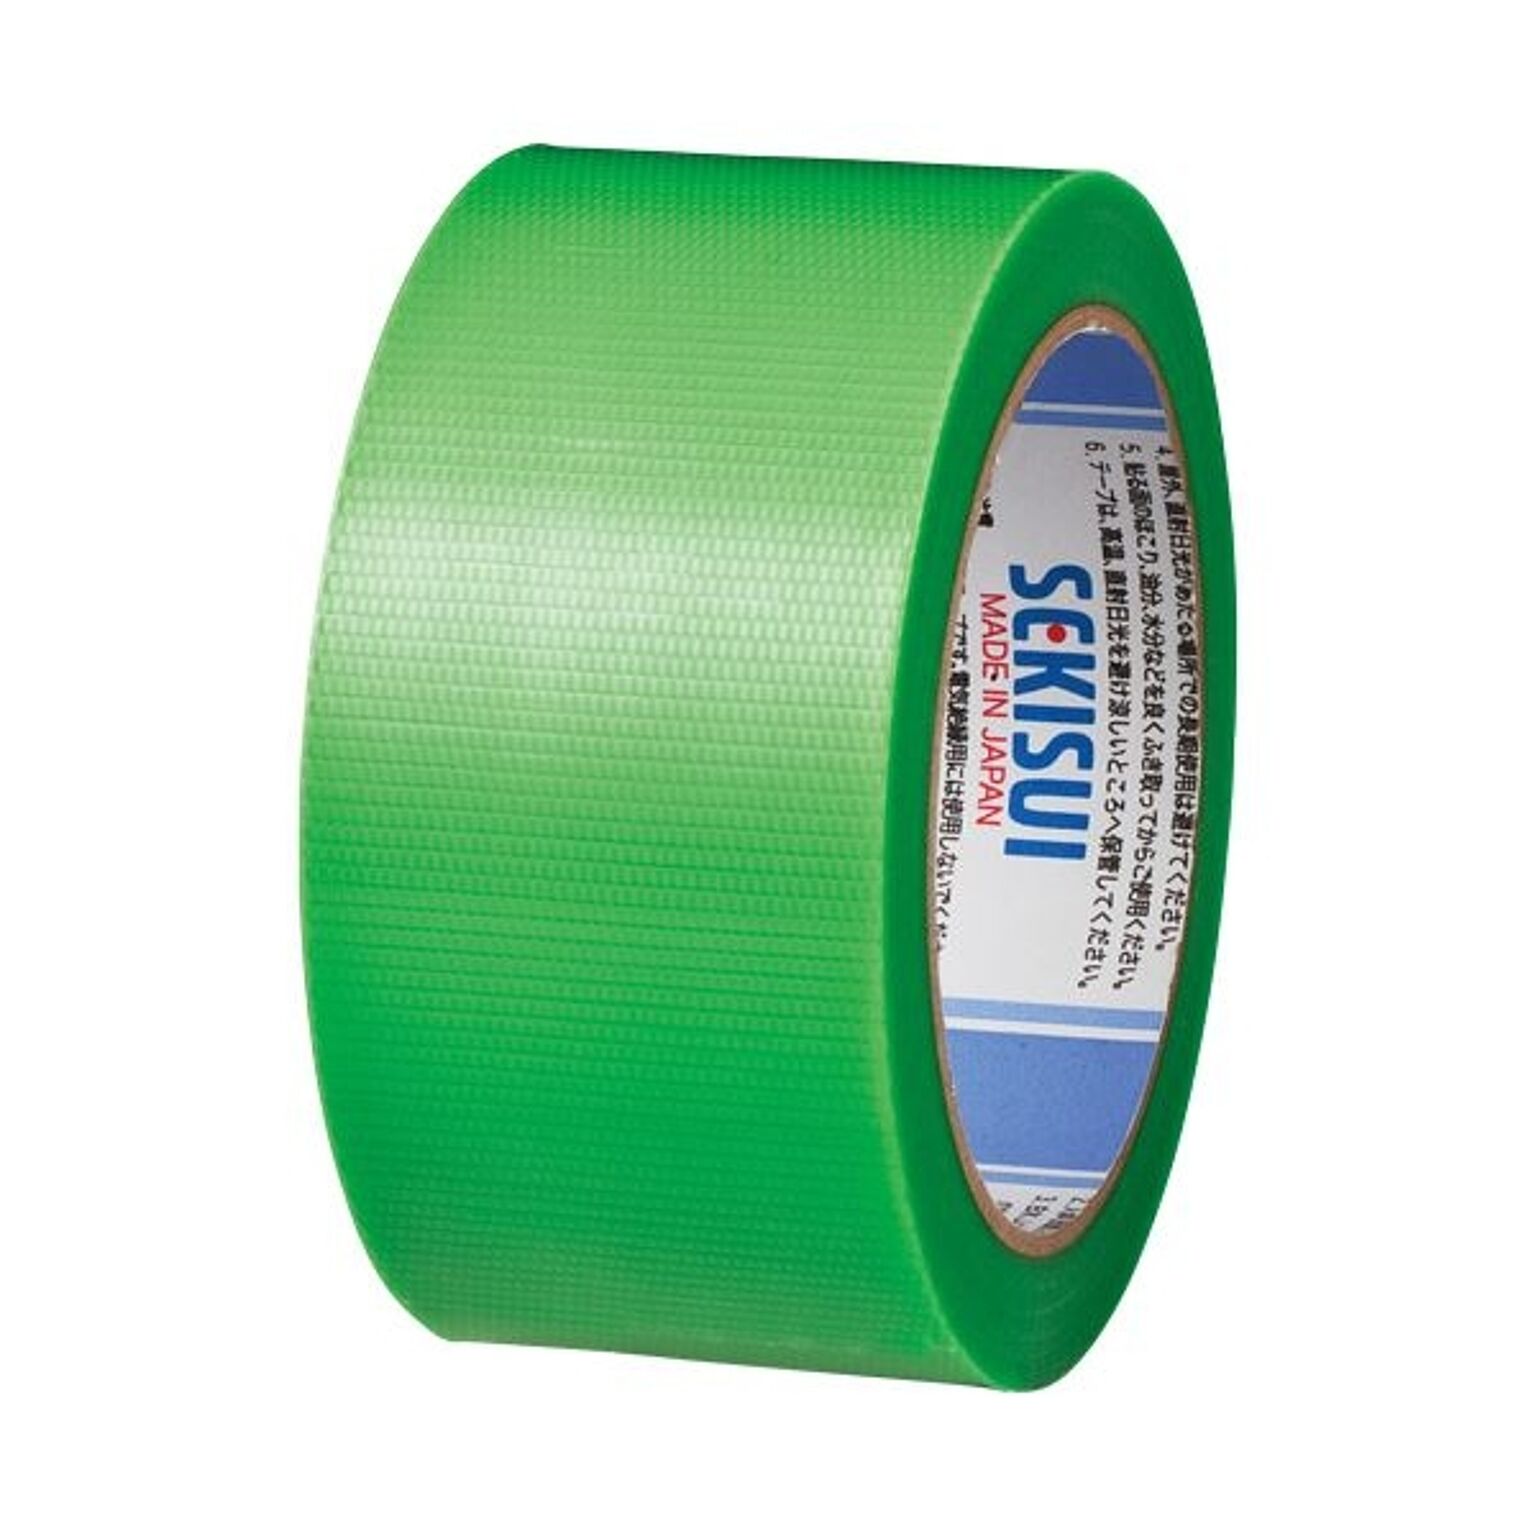 まとめ) 積水化学 マスクライトテープ No.730 50mm×25m 緑 建築養生